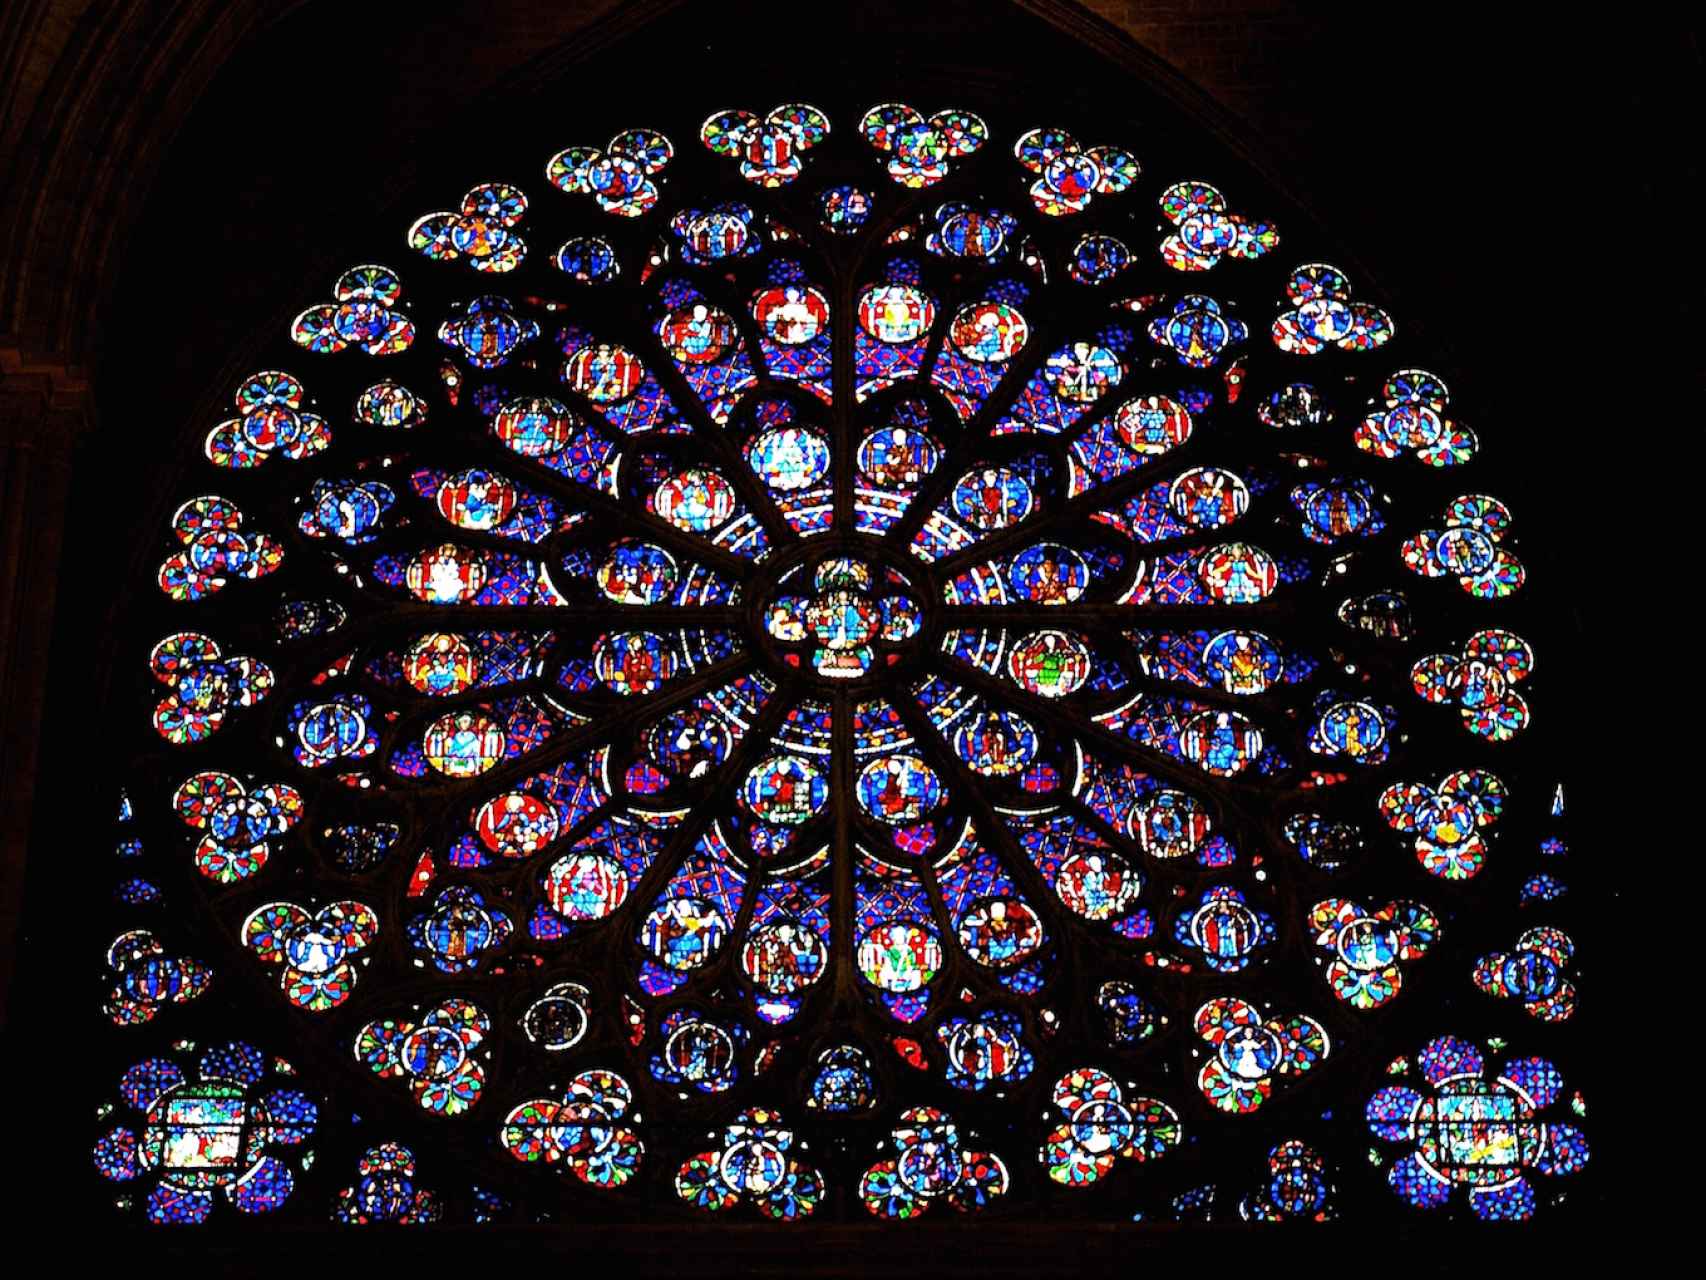 La vidriera sur de Notre Dame.